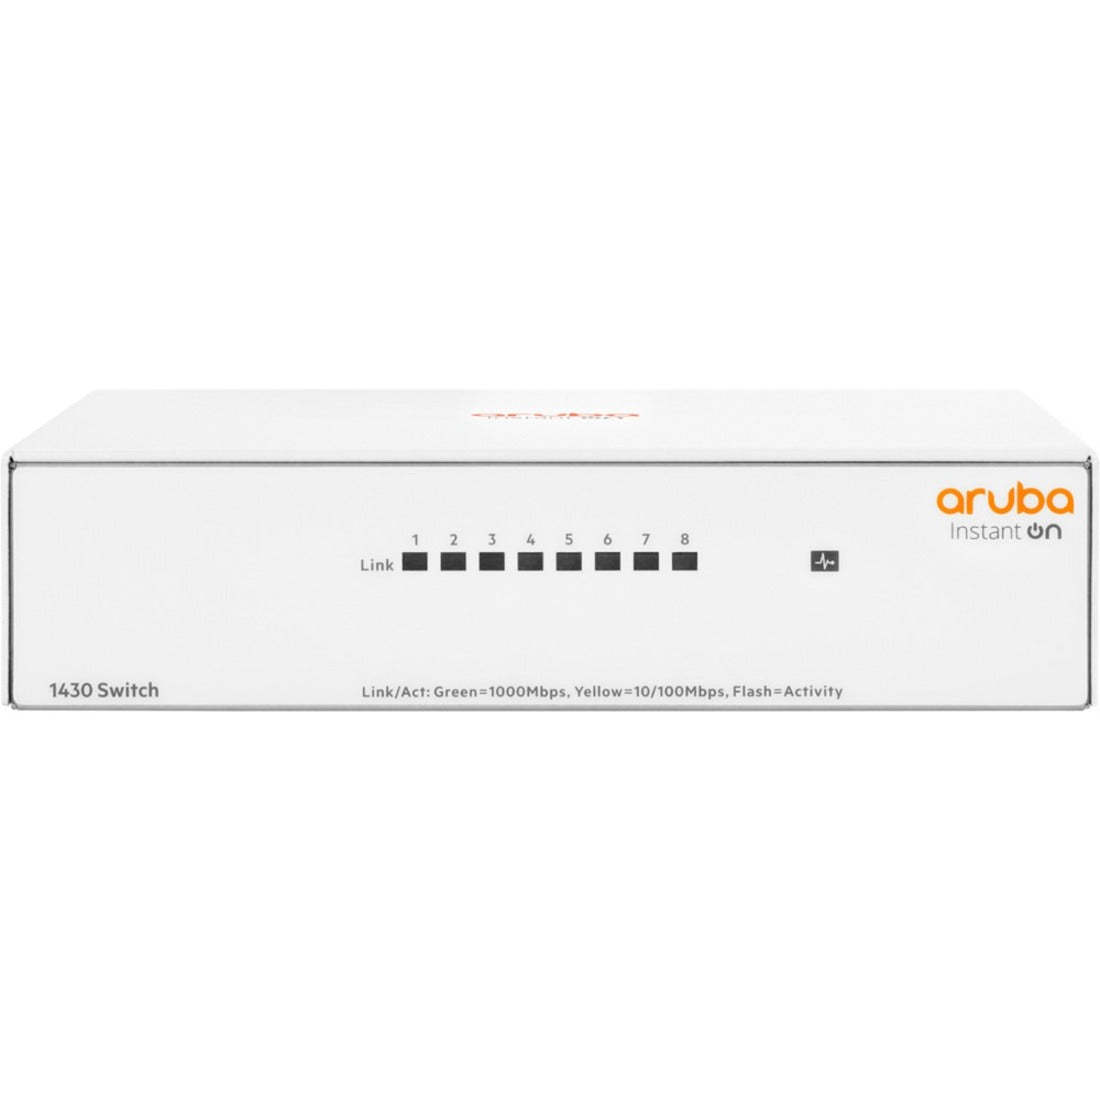 品牌名称：阿鲁巴（Aruba） 阿鲁巴即时开启1430 8G交换机，8端口千兆以太网网络，商用。